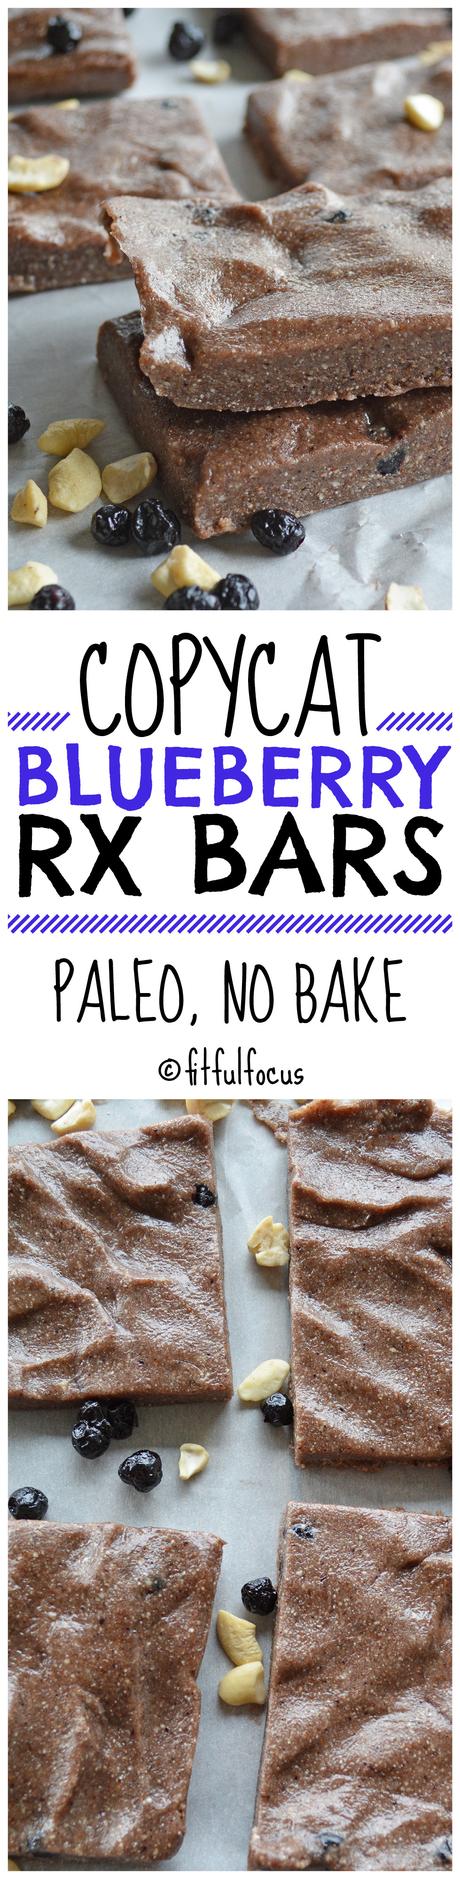 Copycat Blueberry RX Bars (paleo, no bake)